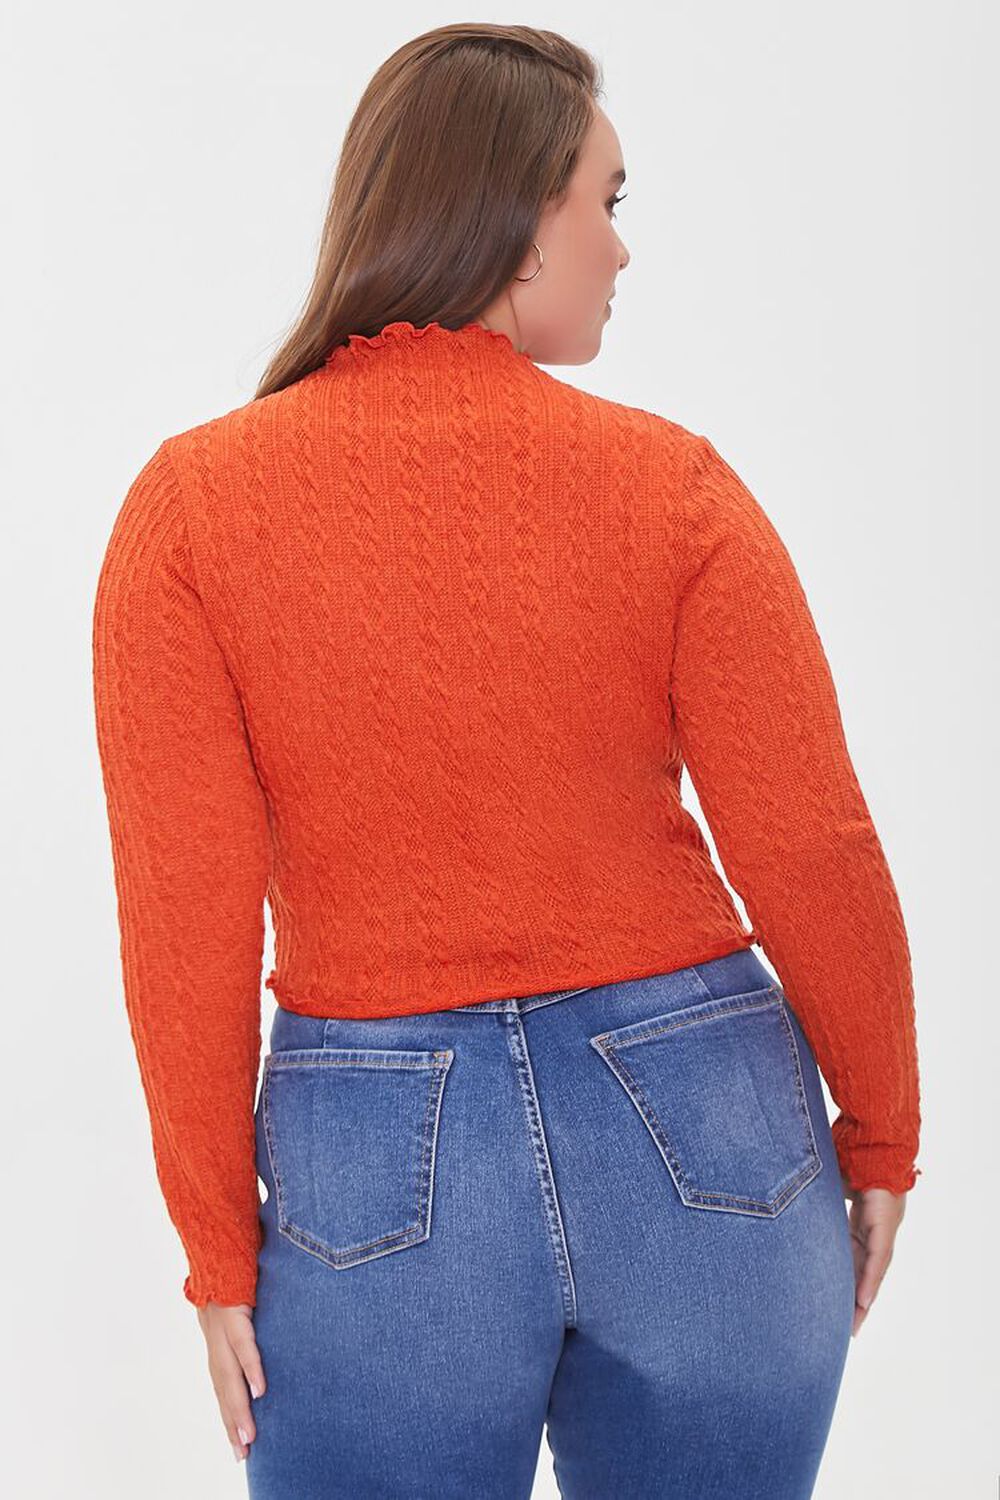 Orange Knit Top